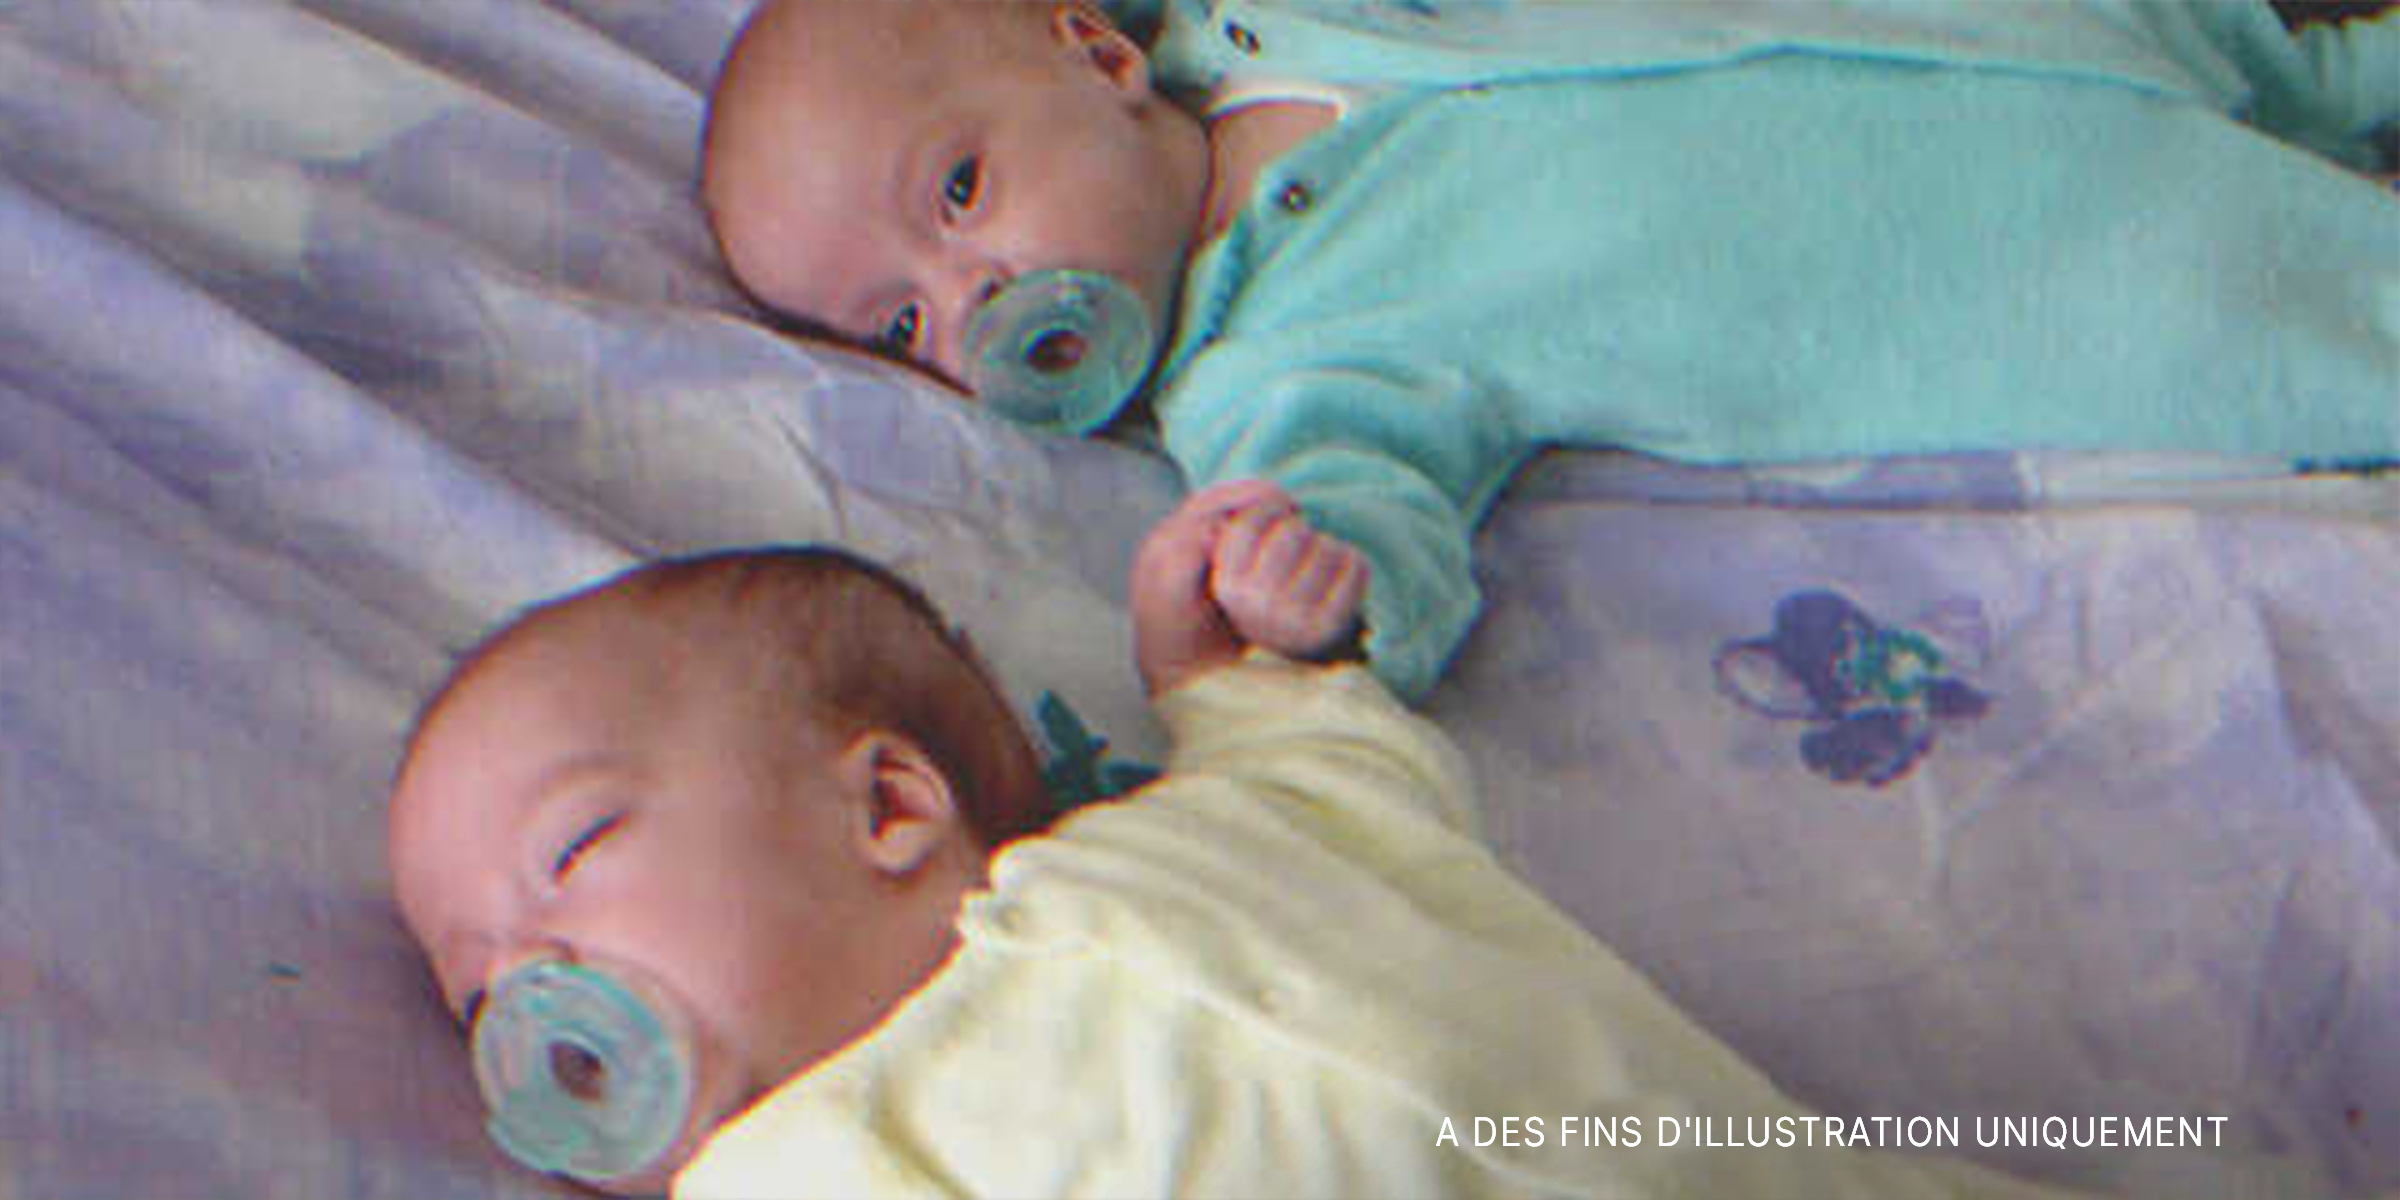 Jumeaux nouveau-nés sur le lit | Source : Flickr/goldberg (CC BY 2.0)